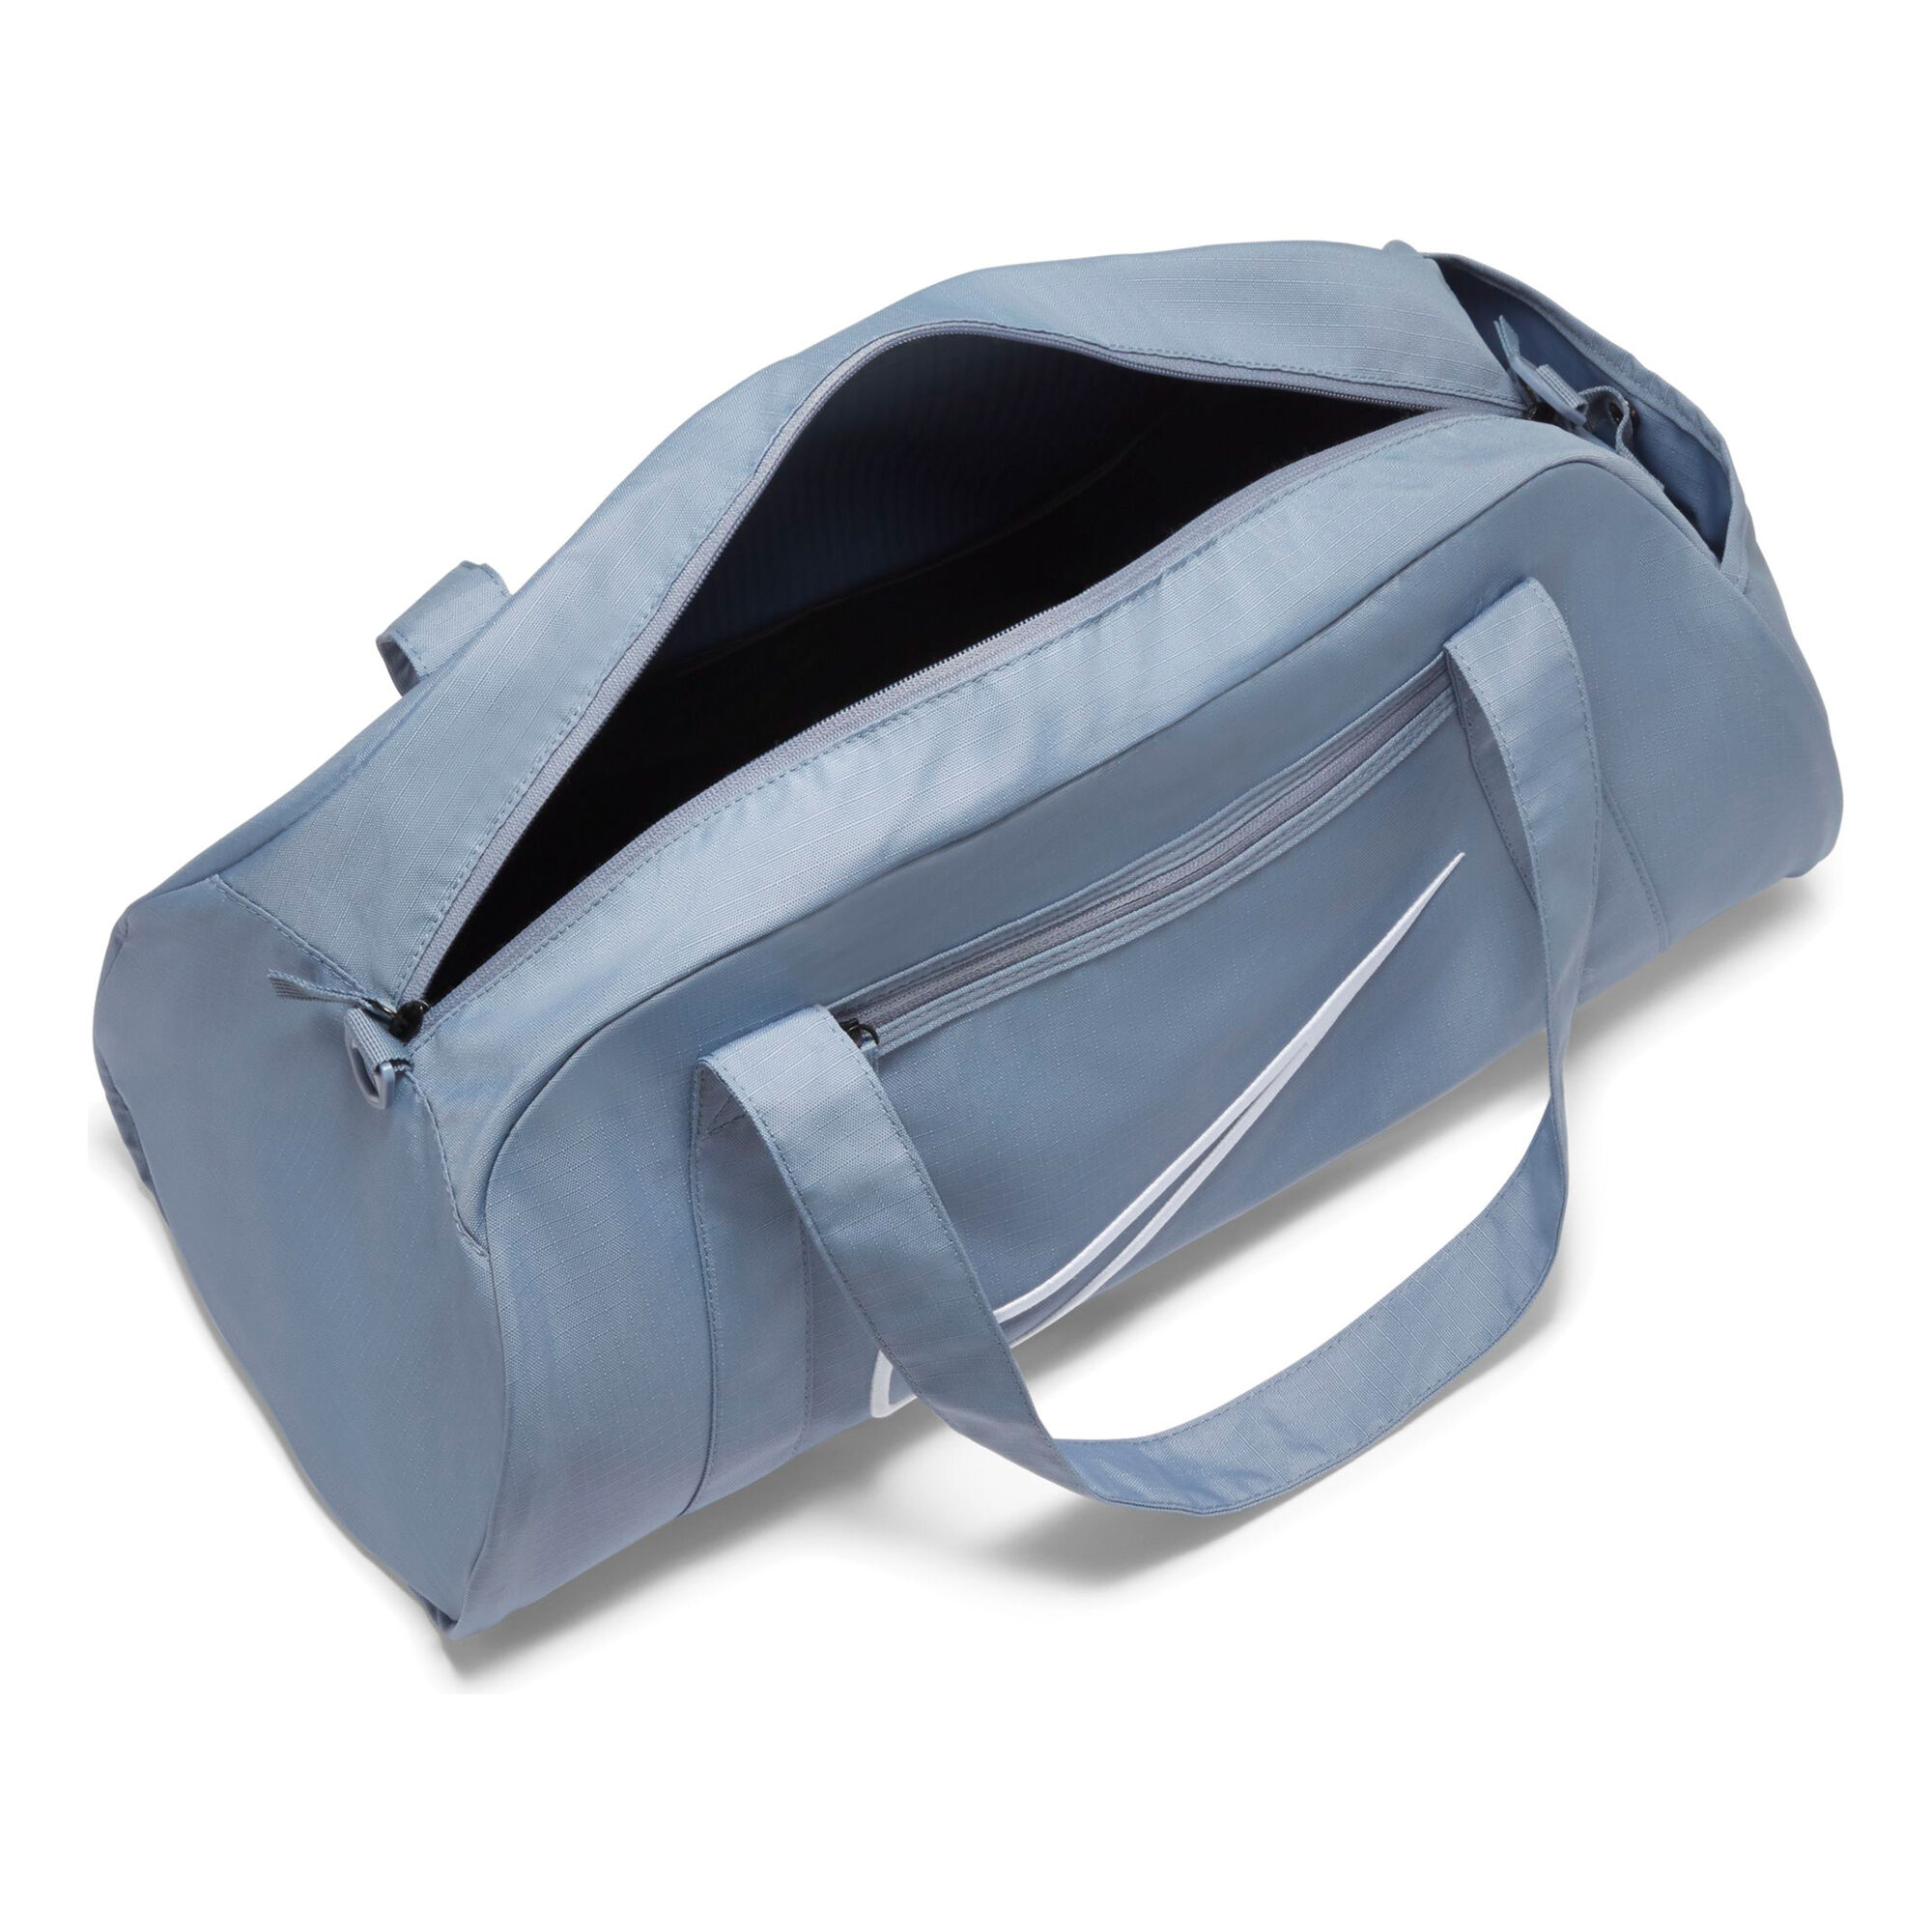 buy Nike Duffle Sports Bag - Light Blue, White online |